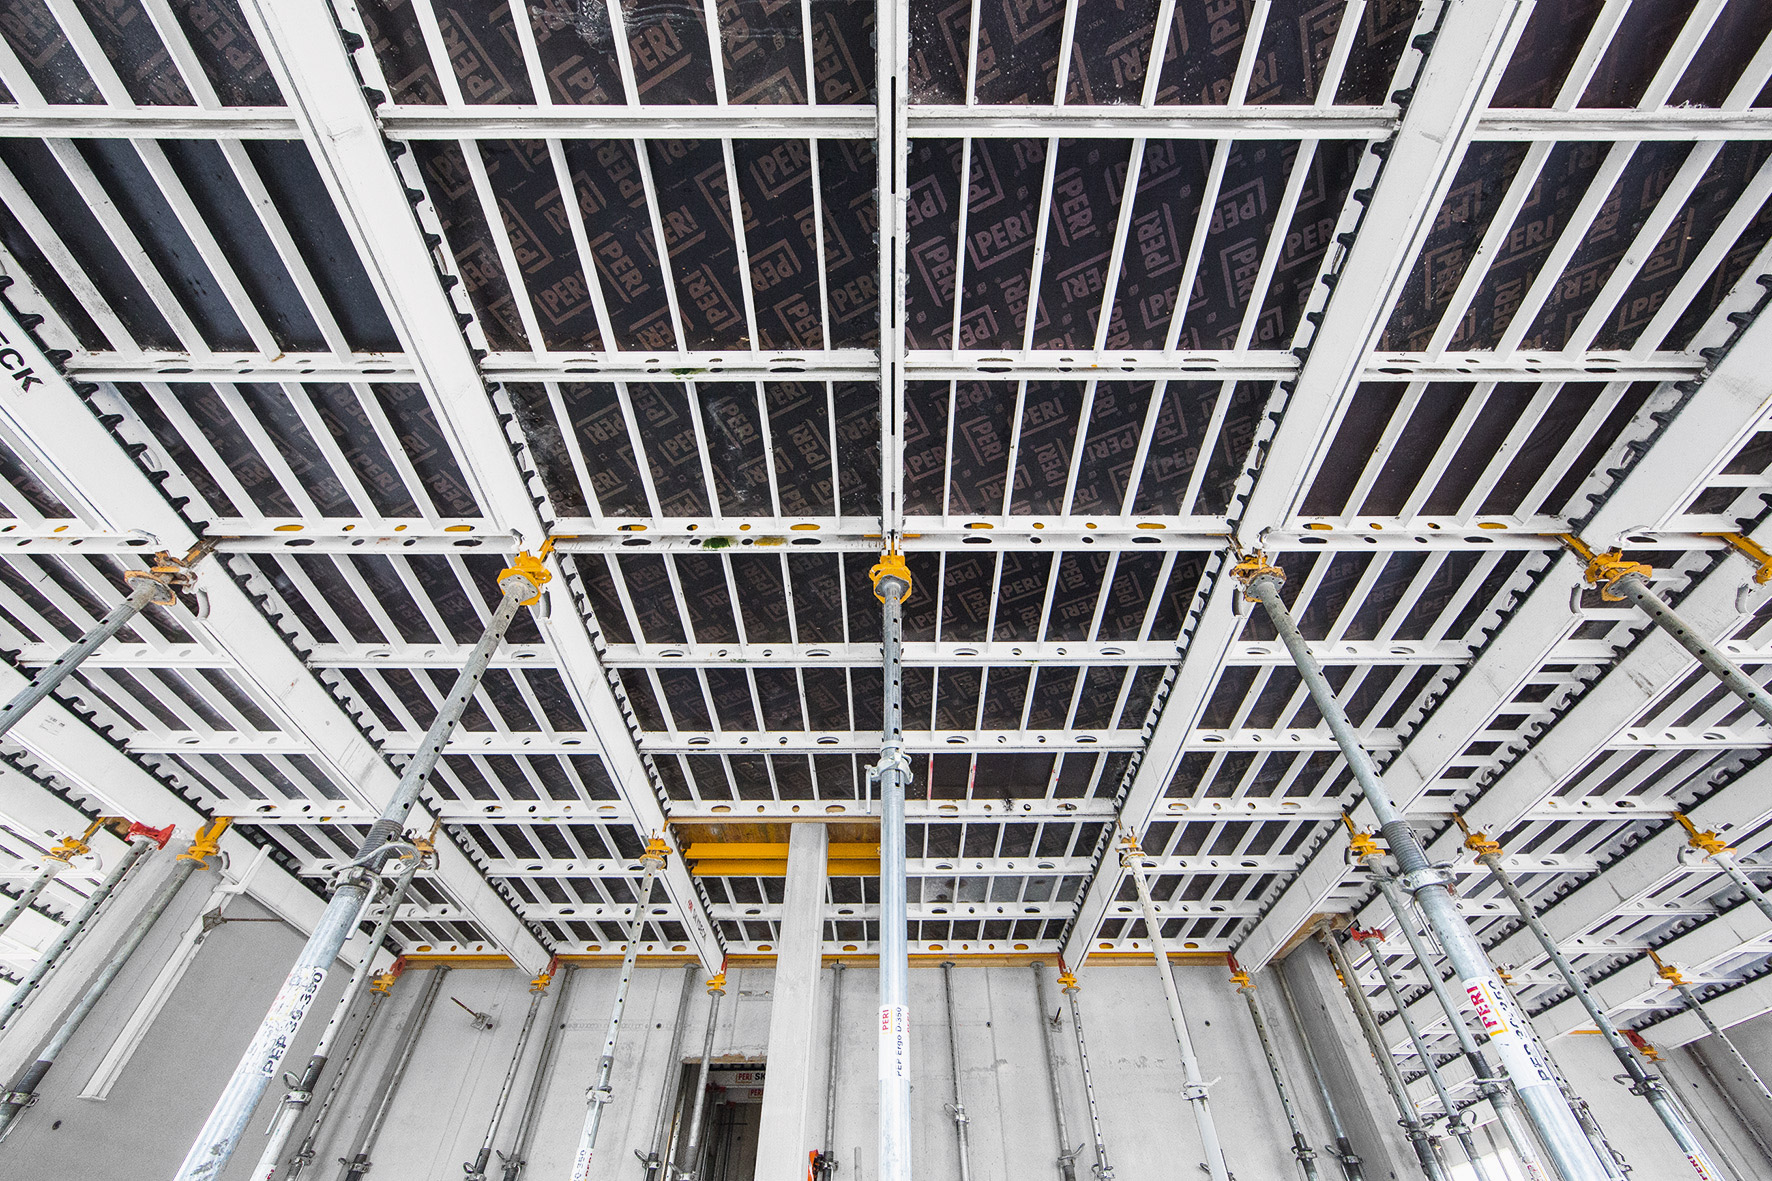 Panelové stropní bednění SKYDECK zajišťovalo při zhotovení stropů dodržení stejné rychlosti bednění, jaká byla na začátku u stropu v podzemní garáži.